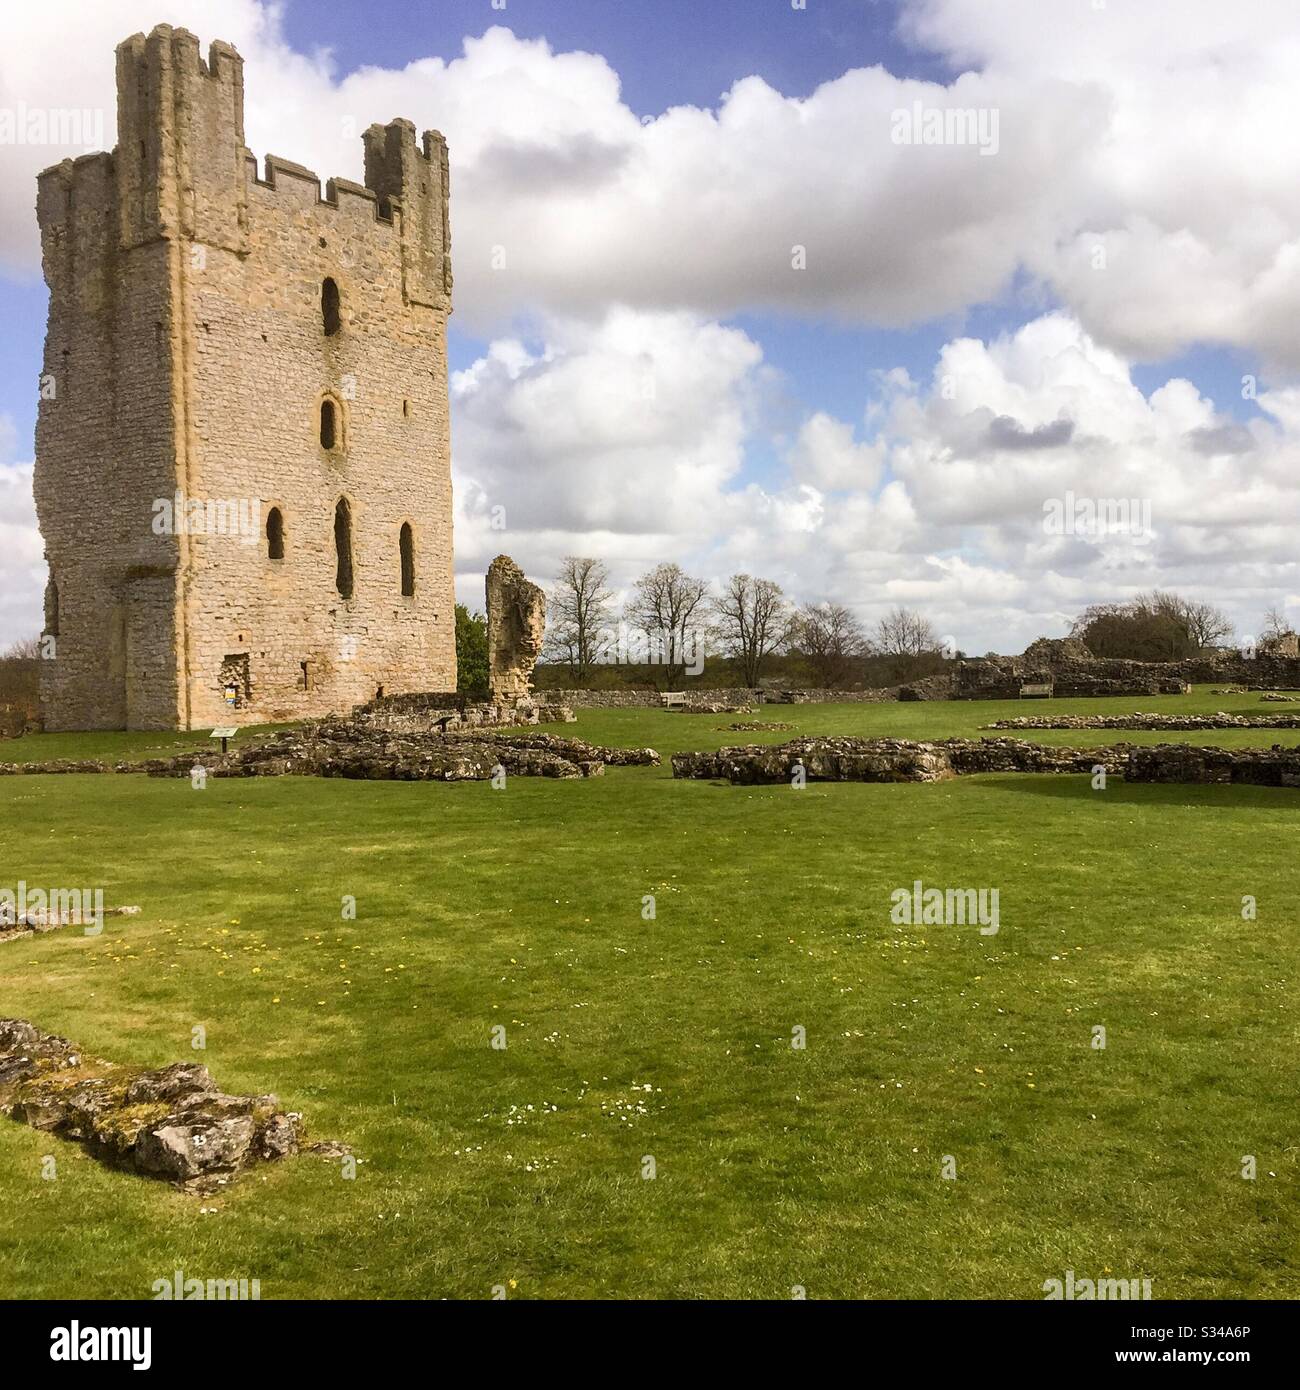 La torre in rovina e le fondamenta medievali del Castello di Helmsley nello Yorkshire. Foto Stock